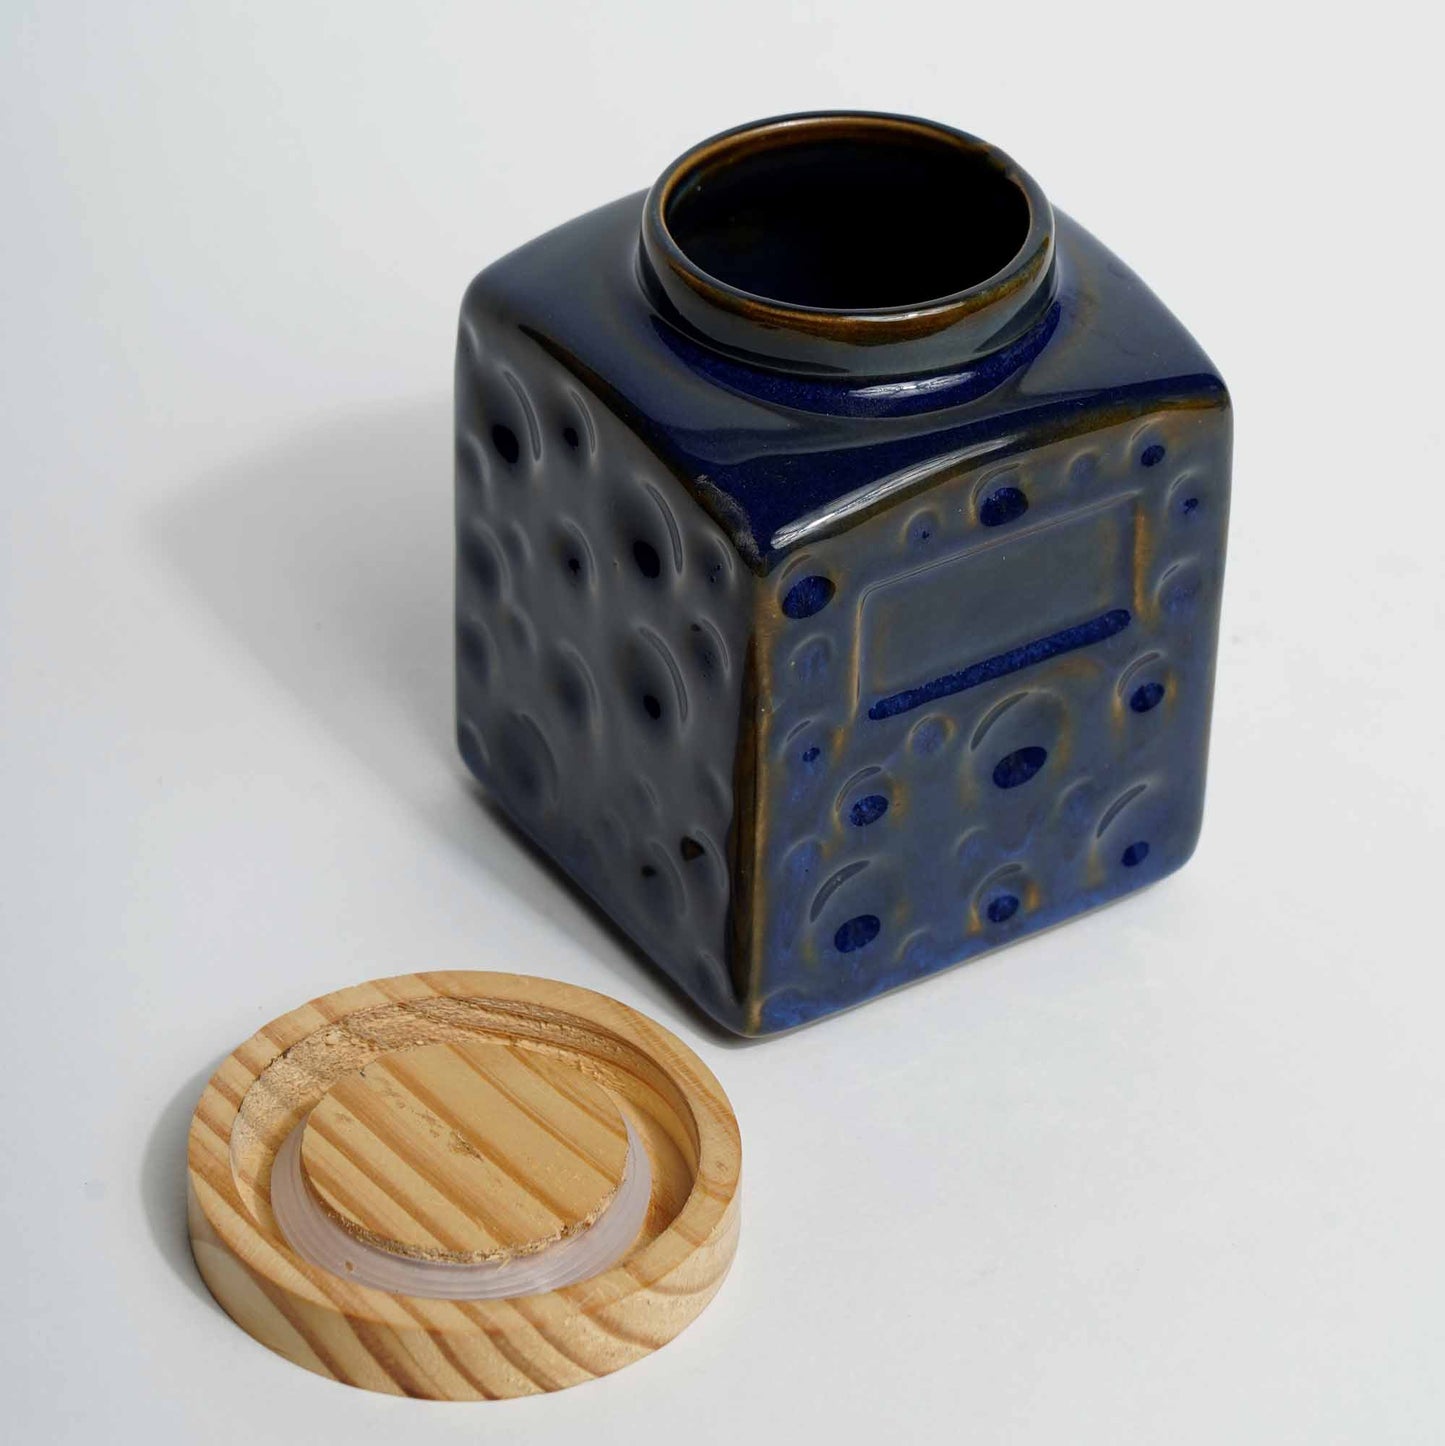 Versatile Storage Jar with Pine Wood Air - Tight Lid